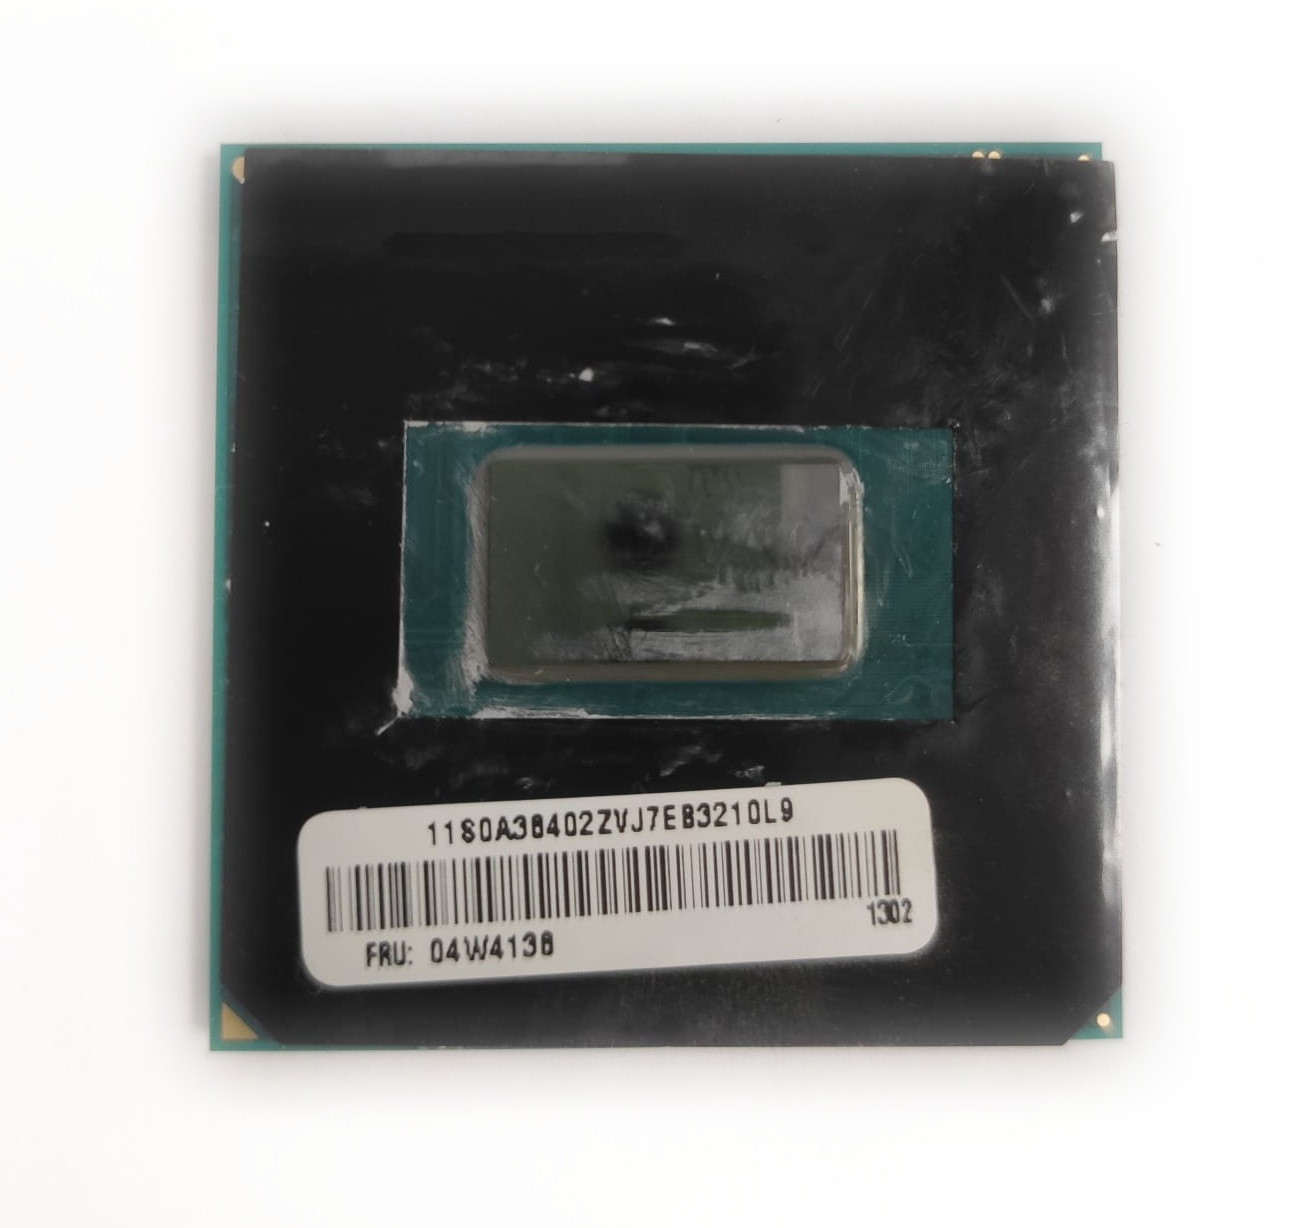 Intel Core i5-3360M @ 2.80GHz SR0MV